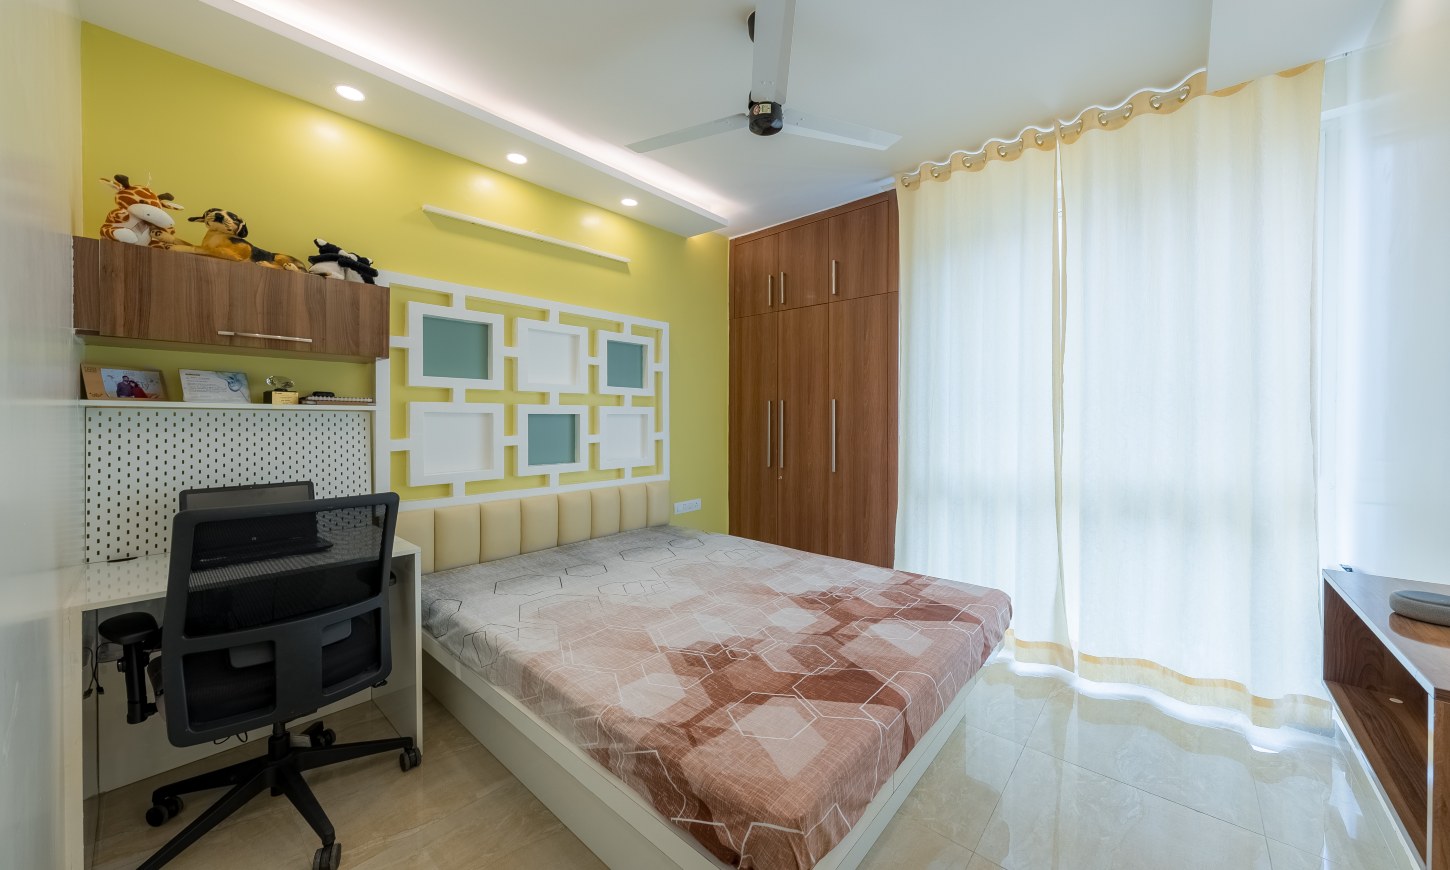 Designcafe designed 2 bhk apartment bedroom in Sarjapur Road